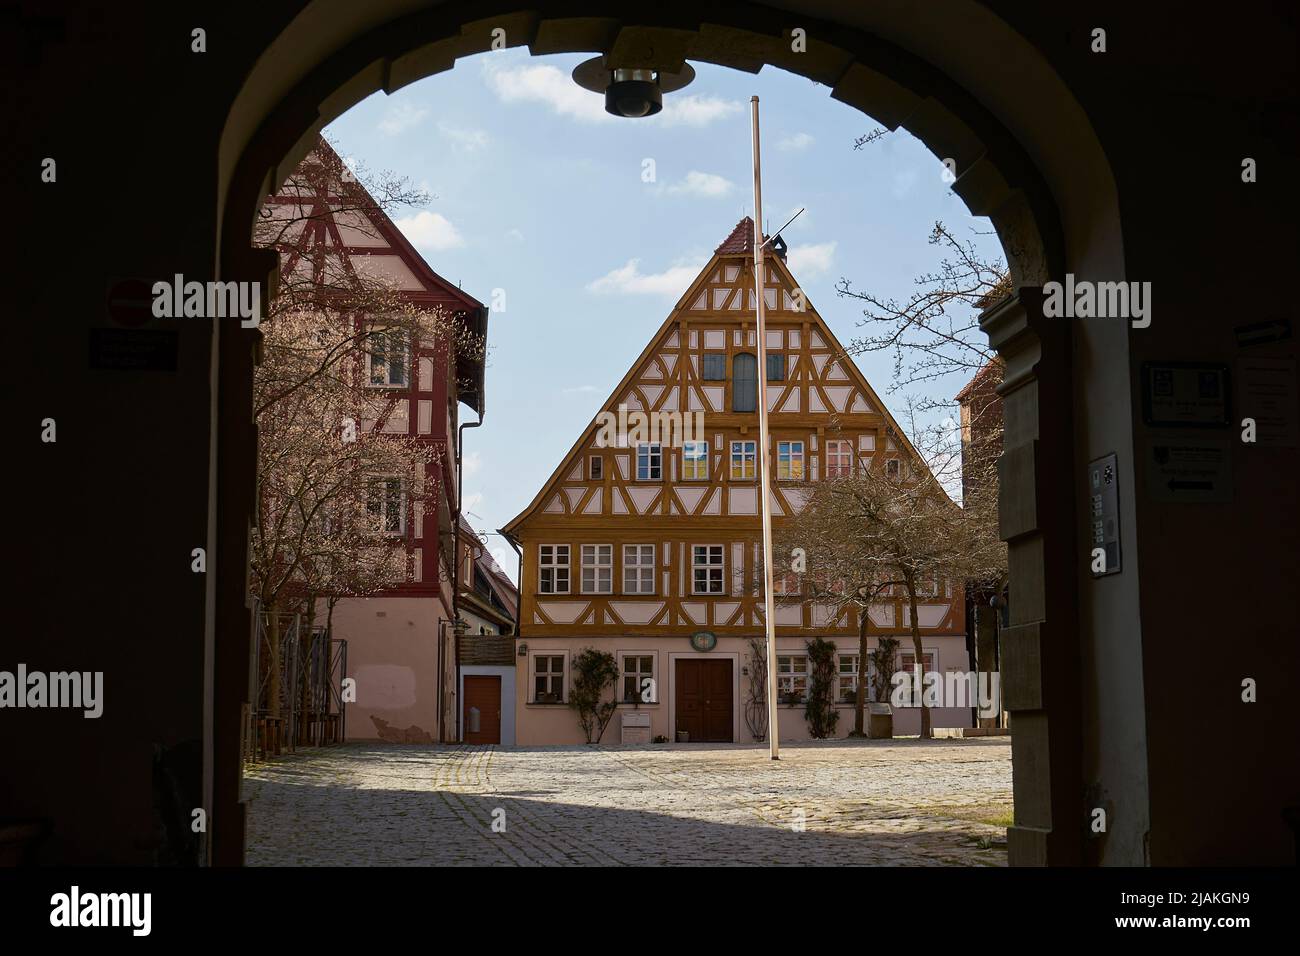 Rektorhaus, Fachwerkhaus, Martin Luther Platz, Blick durch den Torbogen von dem Rathaus, Bad Windsheim, Bayern, Deutschland Stock Photo